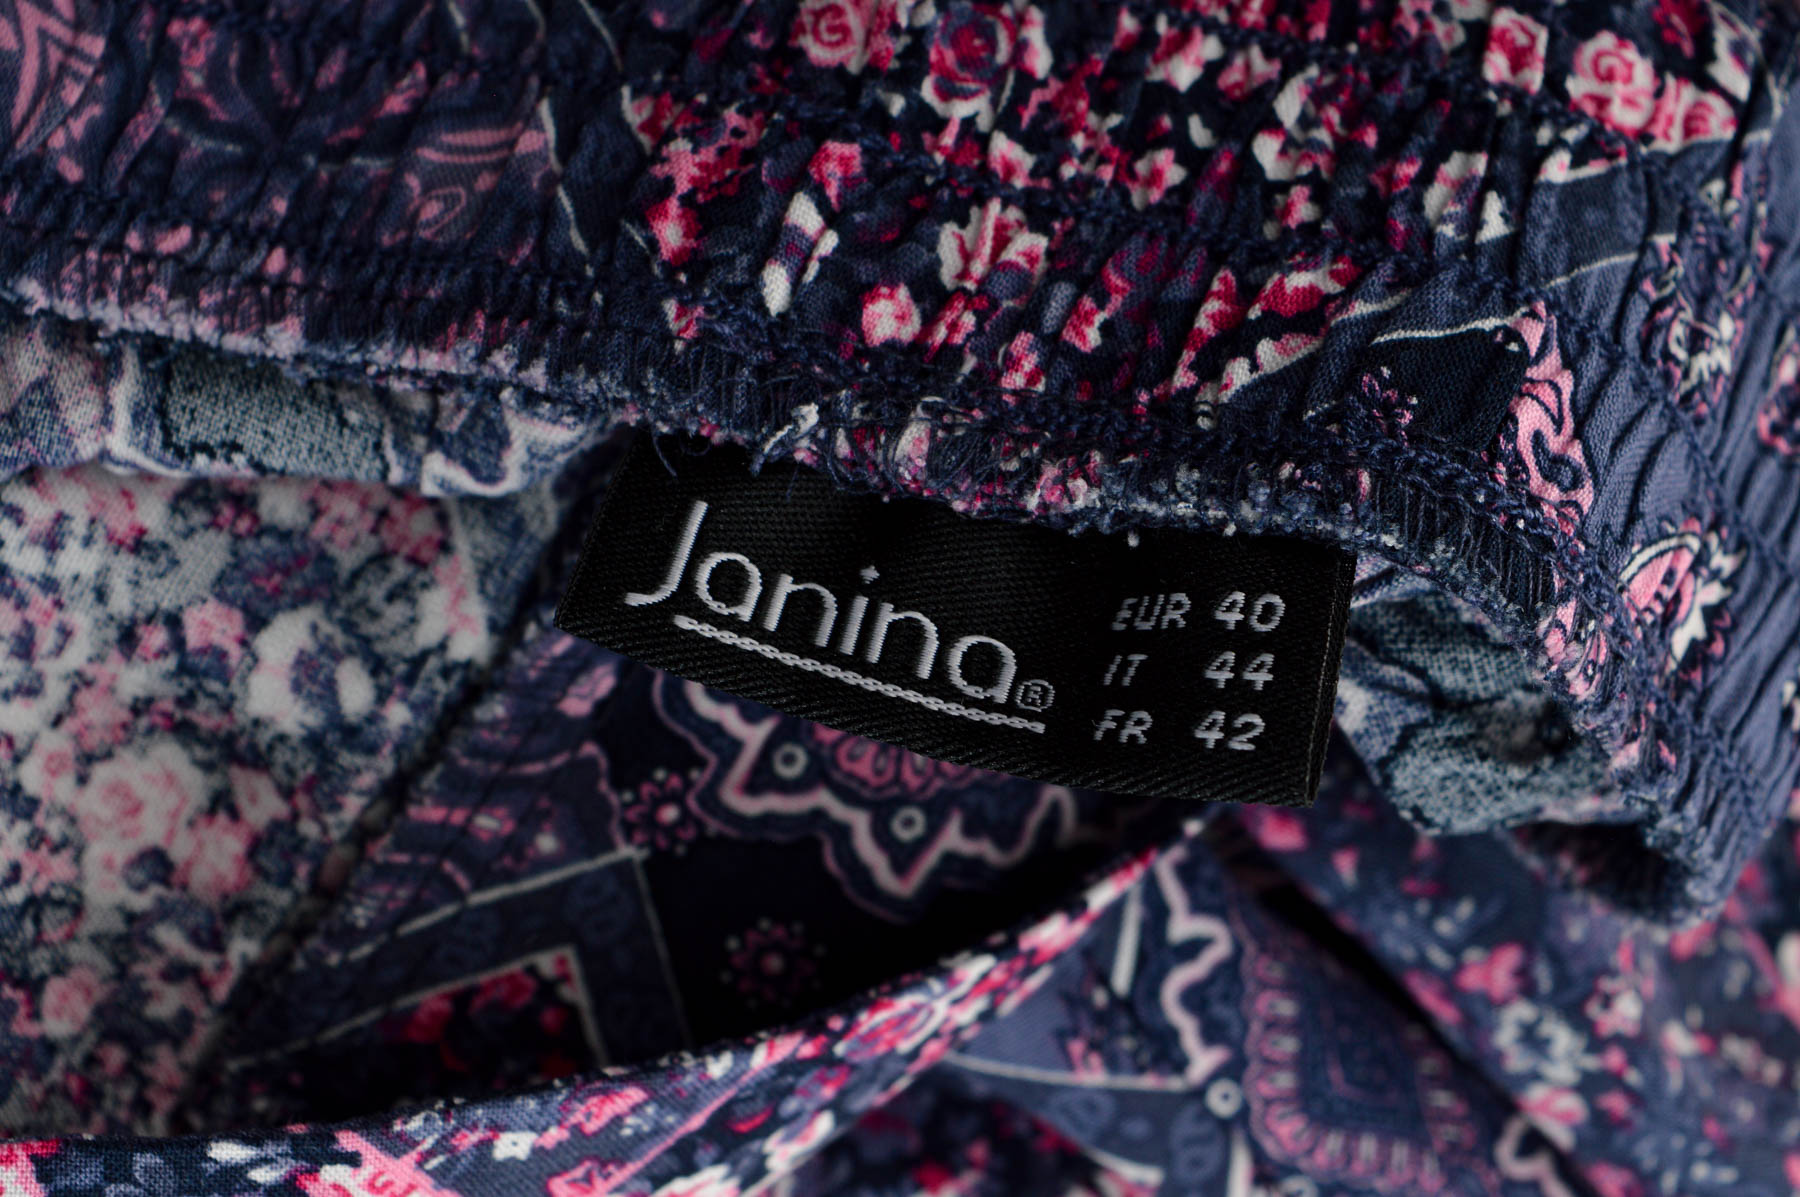 Spodnie damskie - Janina - 2